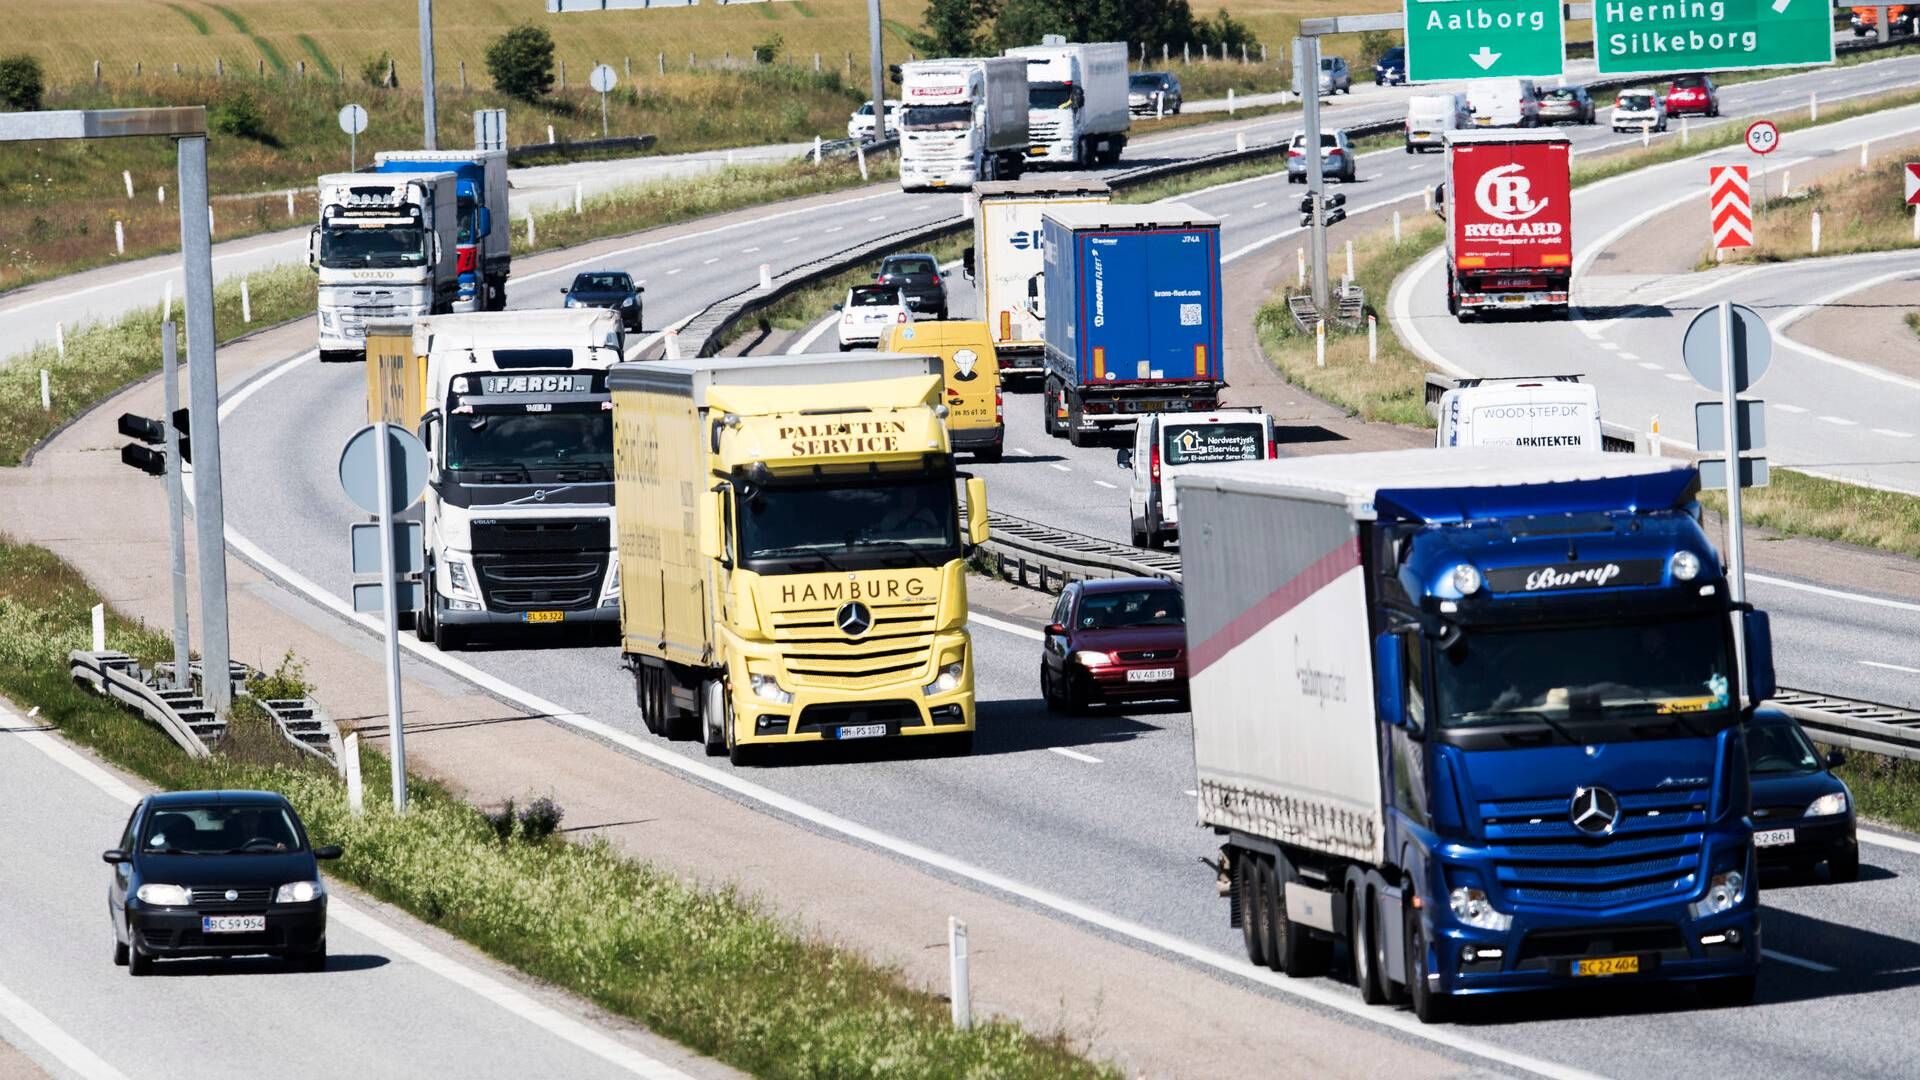 Godschauffører med natarbejde kan fremover forlænge arbejdsdagen fra maksimalt 10 timer til 15 timer. | Foto: Tycho Gregers/Jyllands-Posten/Ritzau Scanpix